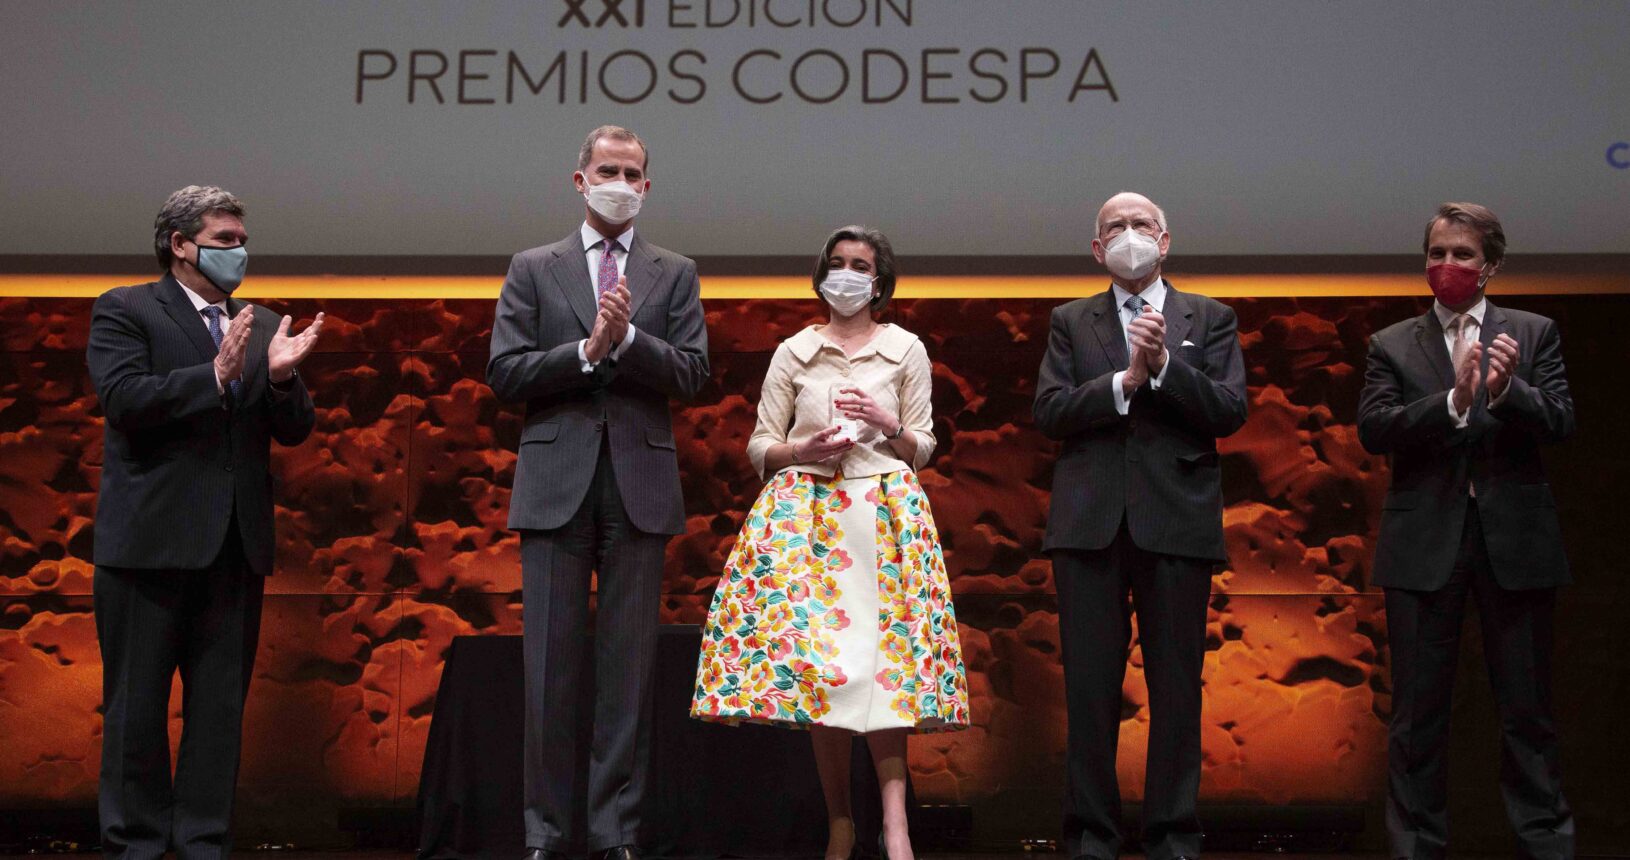 XXI Edición Premios CODESPA (2022)_7